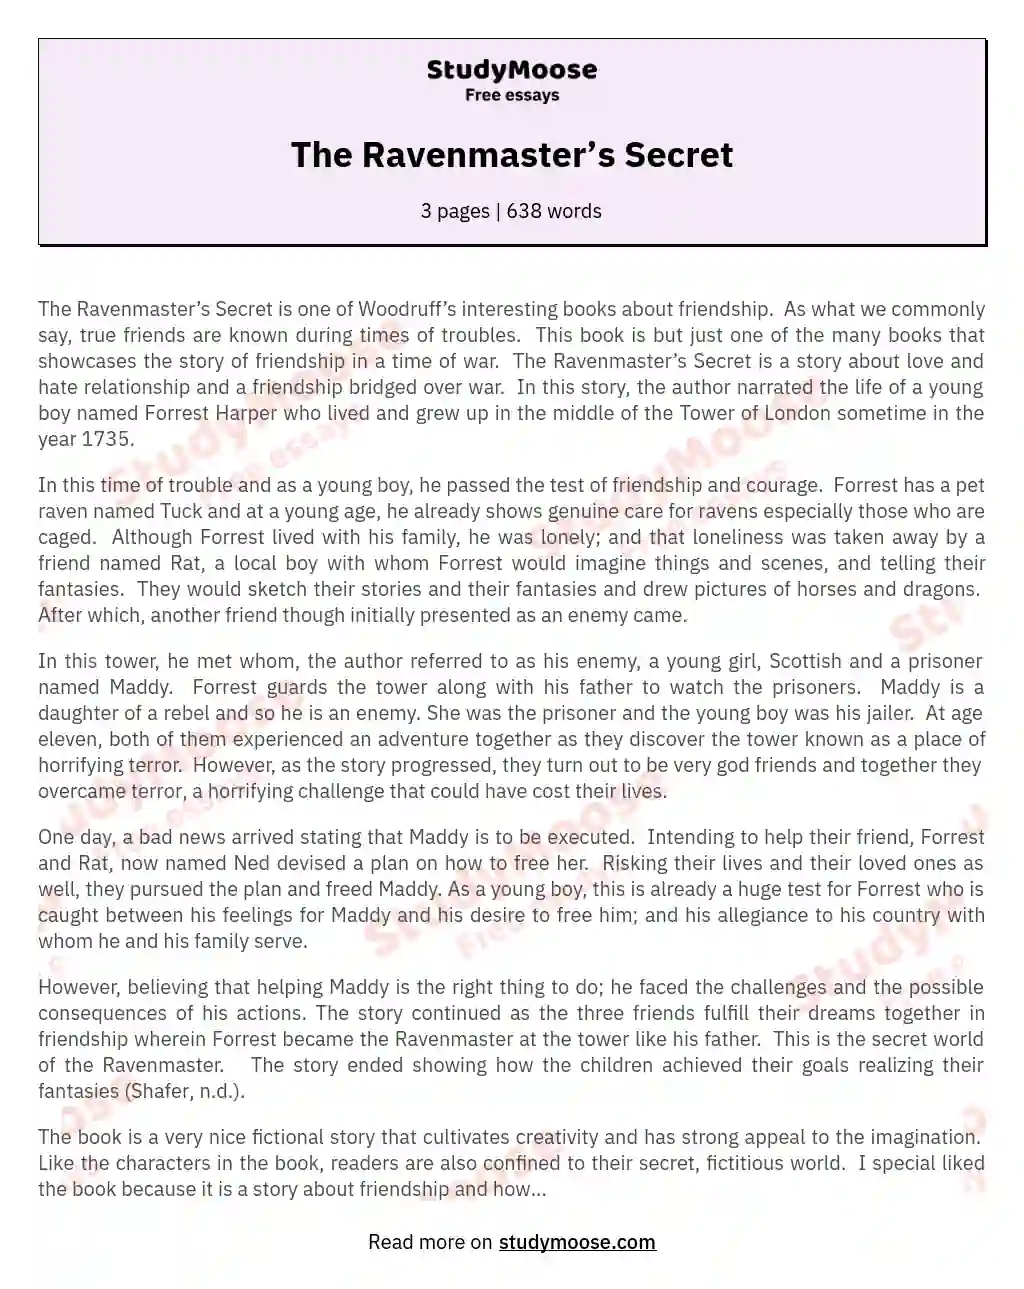 The Ravenmaster’s Secret essay